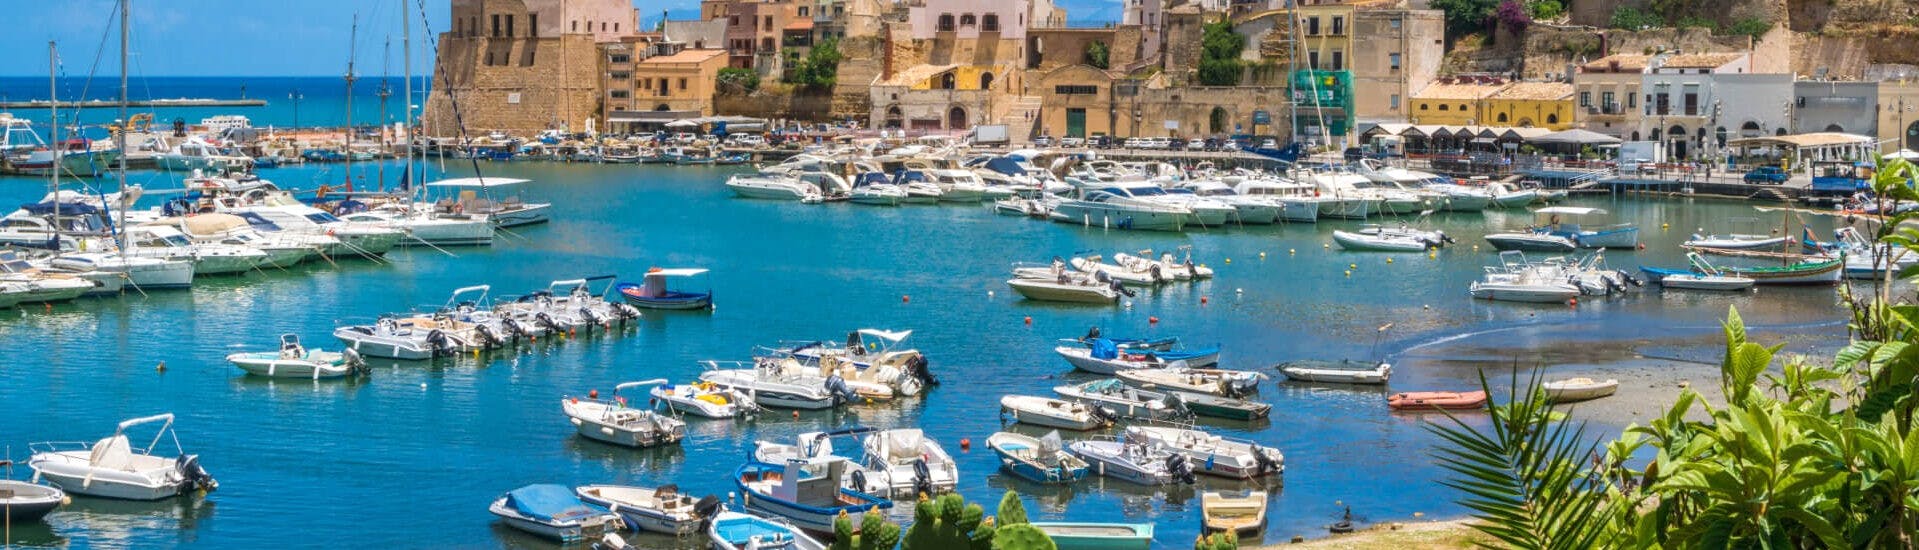 Vista del puerto donde se encuentra el Alquiler de Barcos en Castellammare del Golfo (hasta 6 personas) con Passione Blue Castellammare del Golfo.